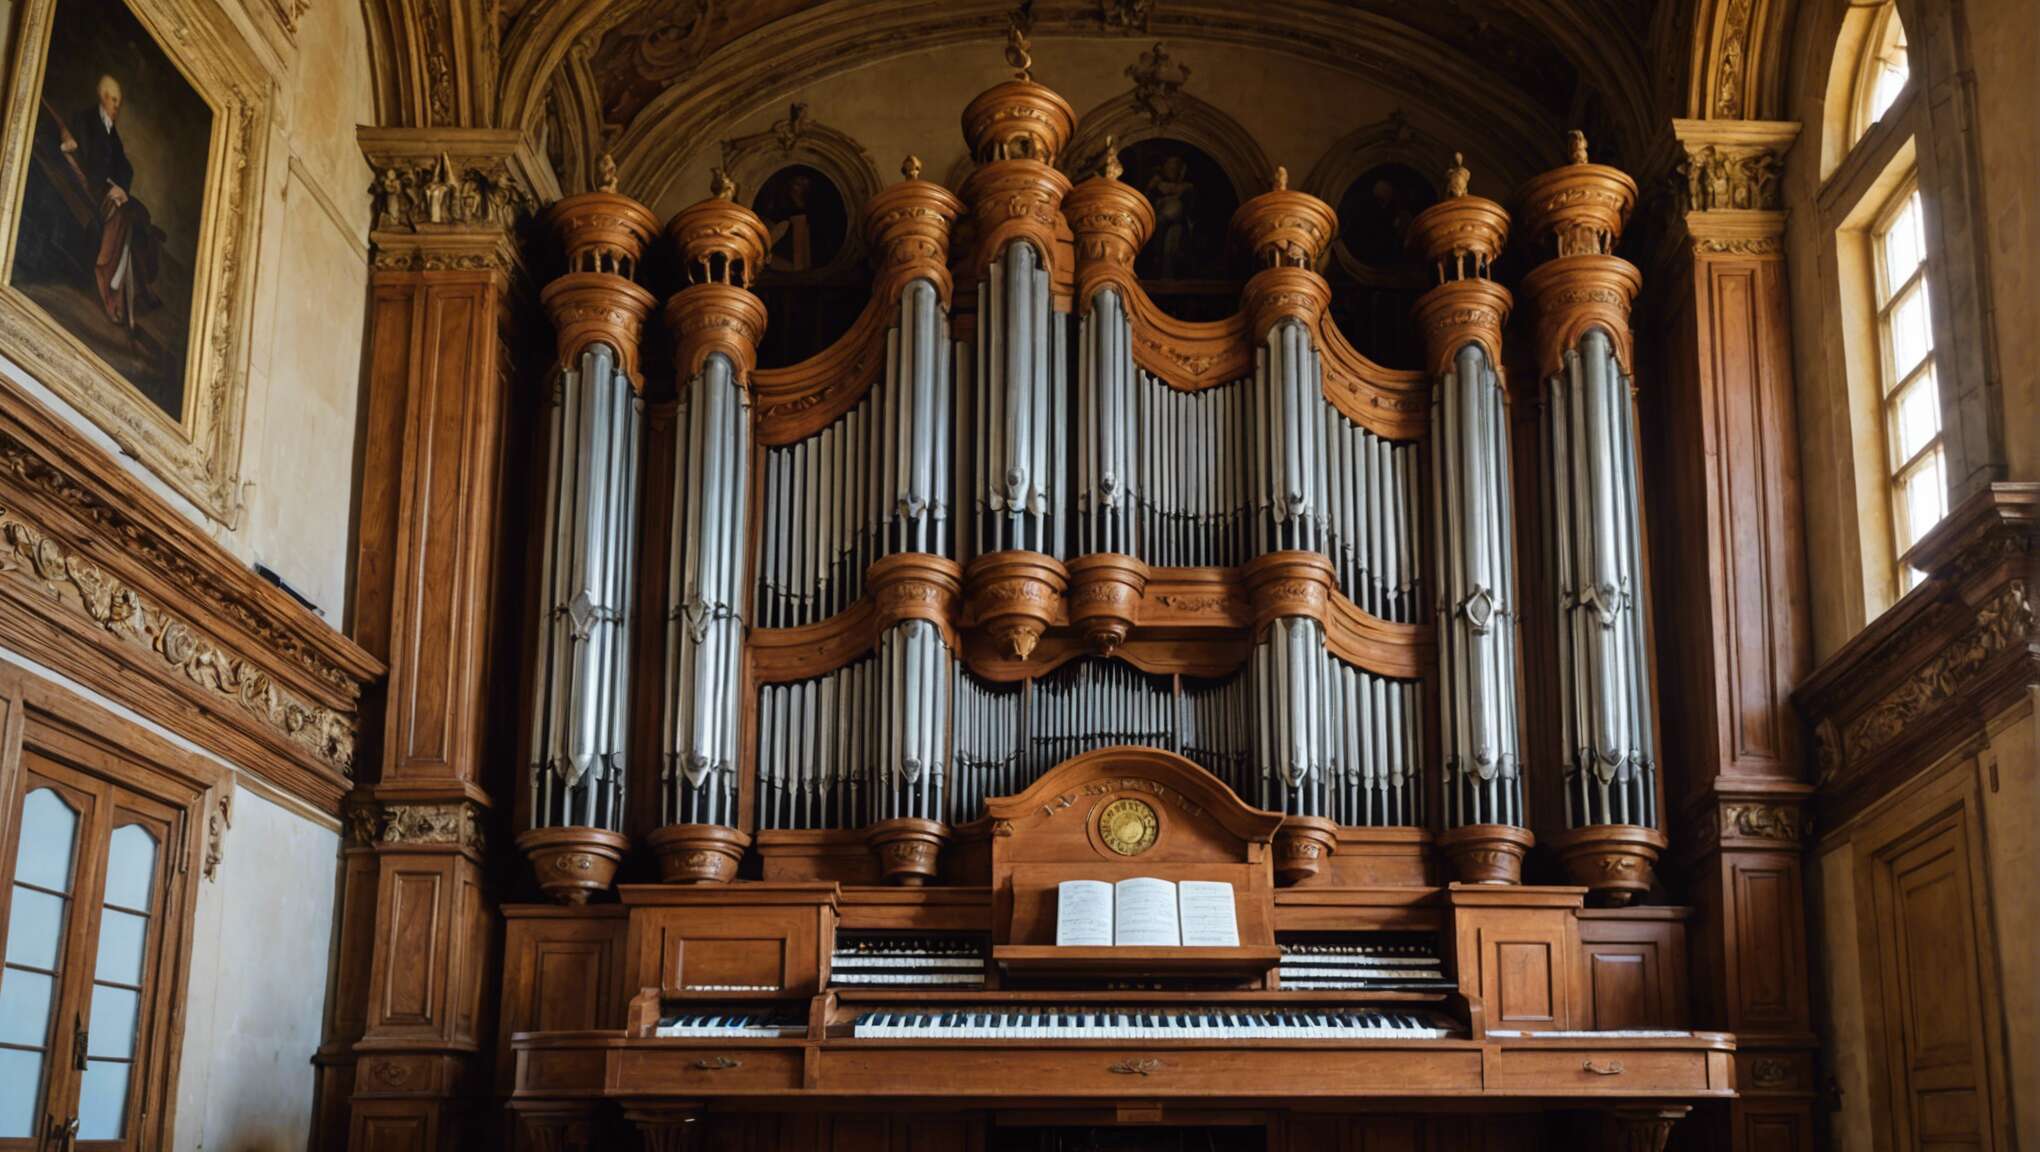 Les orgues monumentales du château : une œuvre musicale pétrifiée